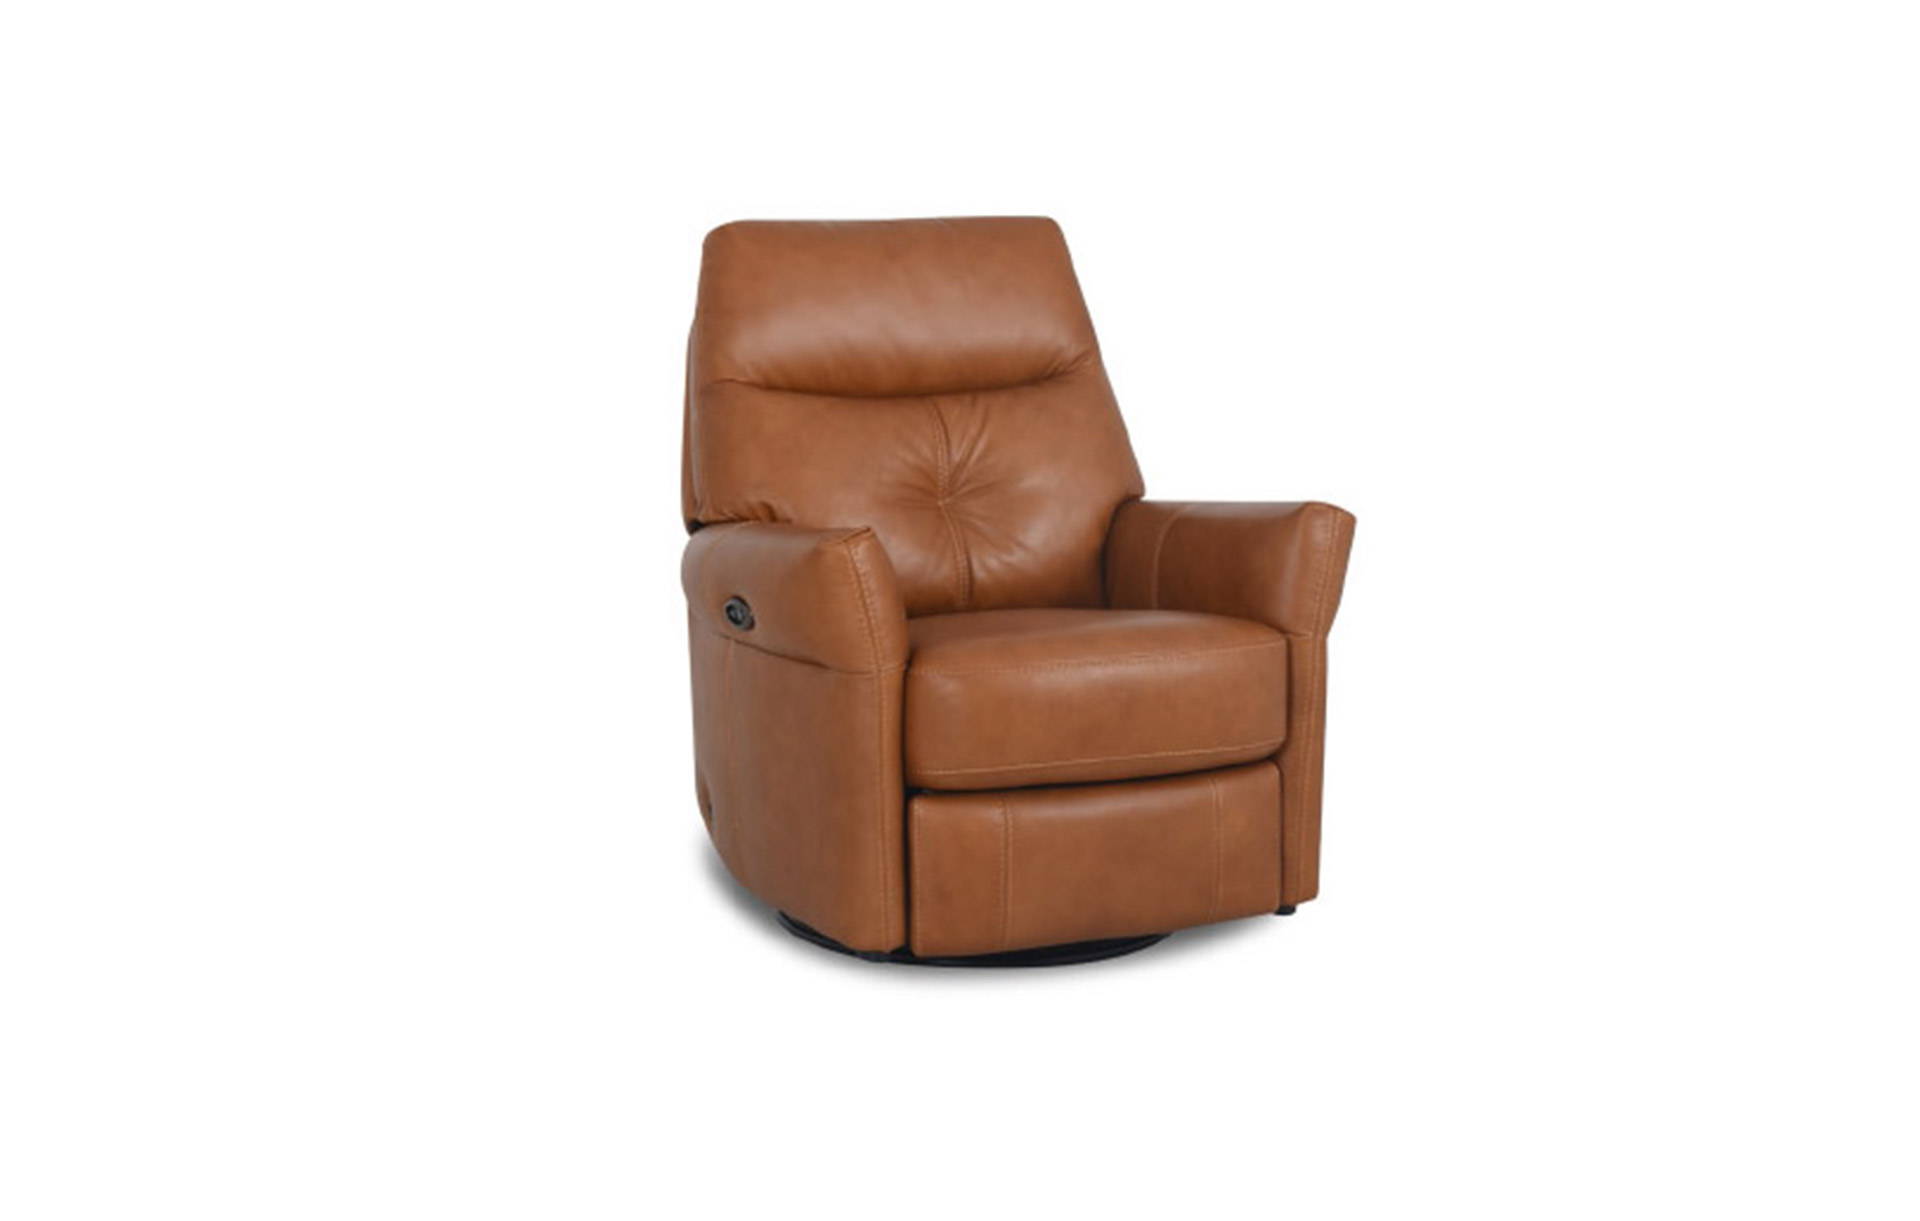 H06721 百分之百義大利全牛皮電動功能沙發椅  |系列產品|單人椅